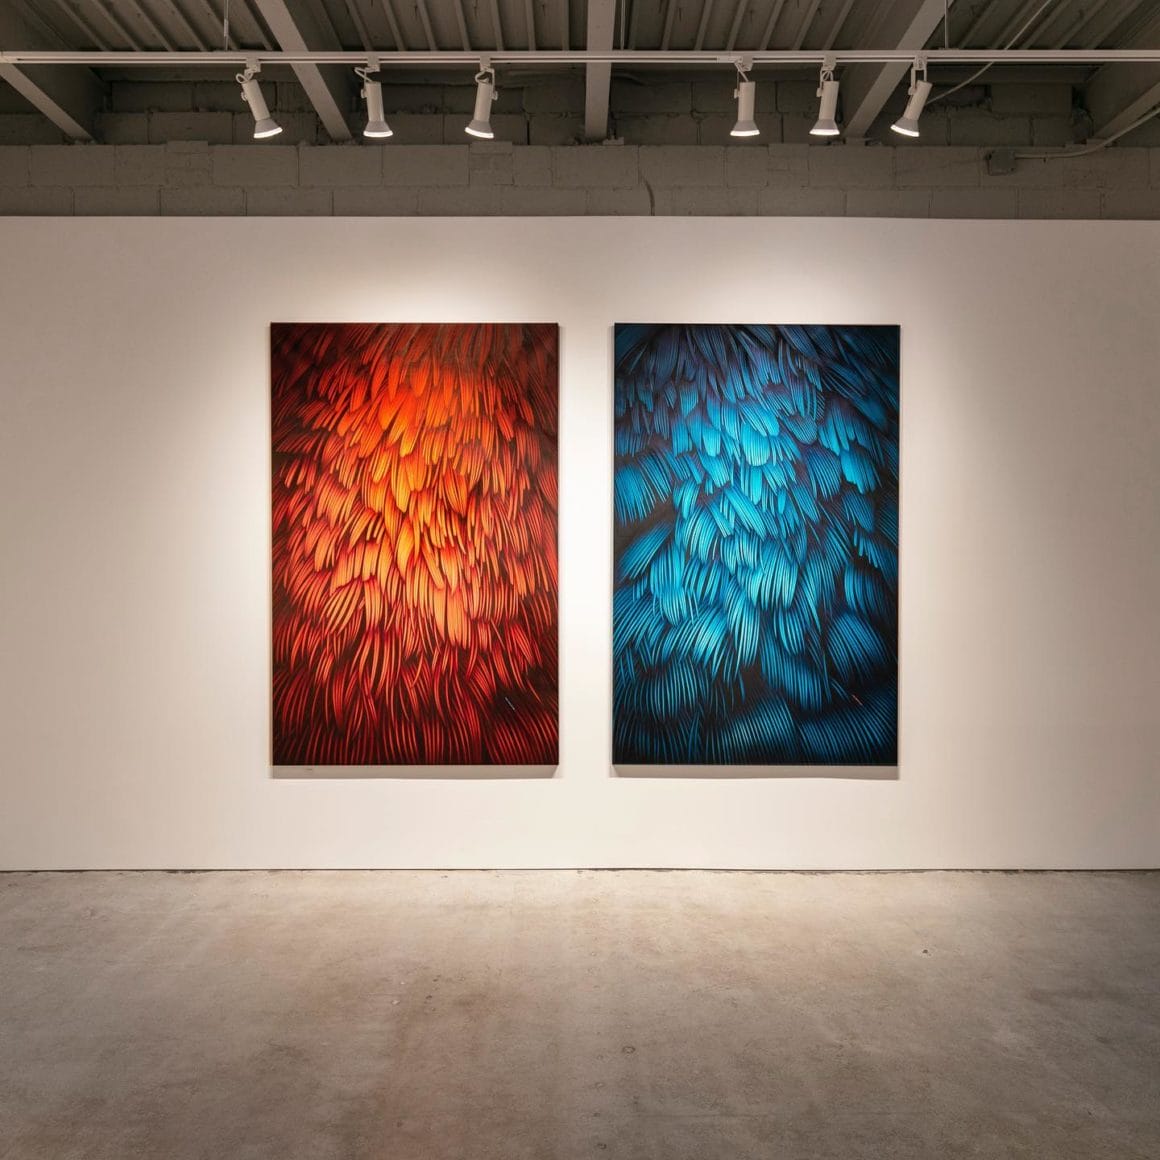 deux oeuvres d'Adèle exposées dans une galerie. L'une représente des plumes oranges et l'autre des plumes bleues